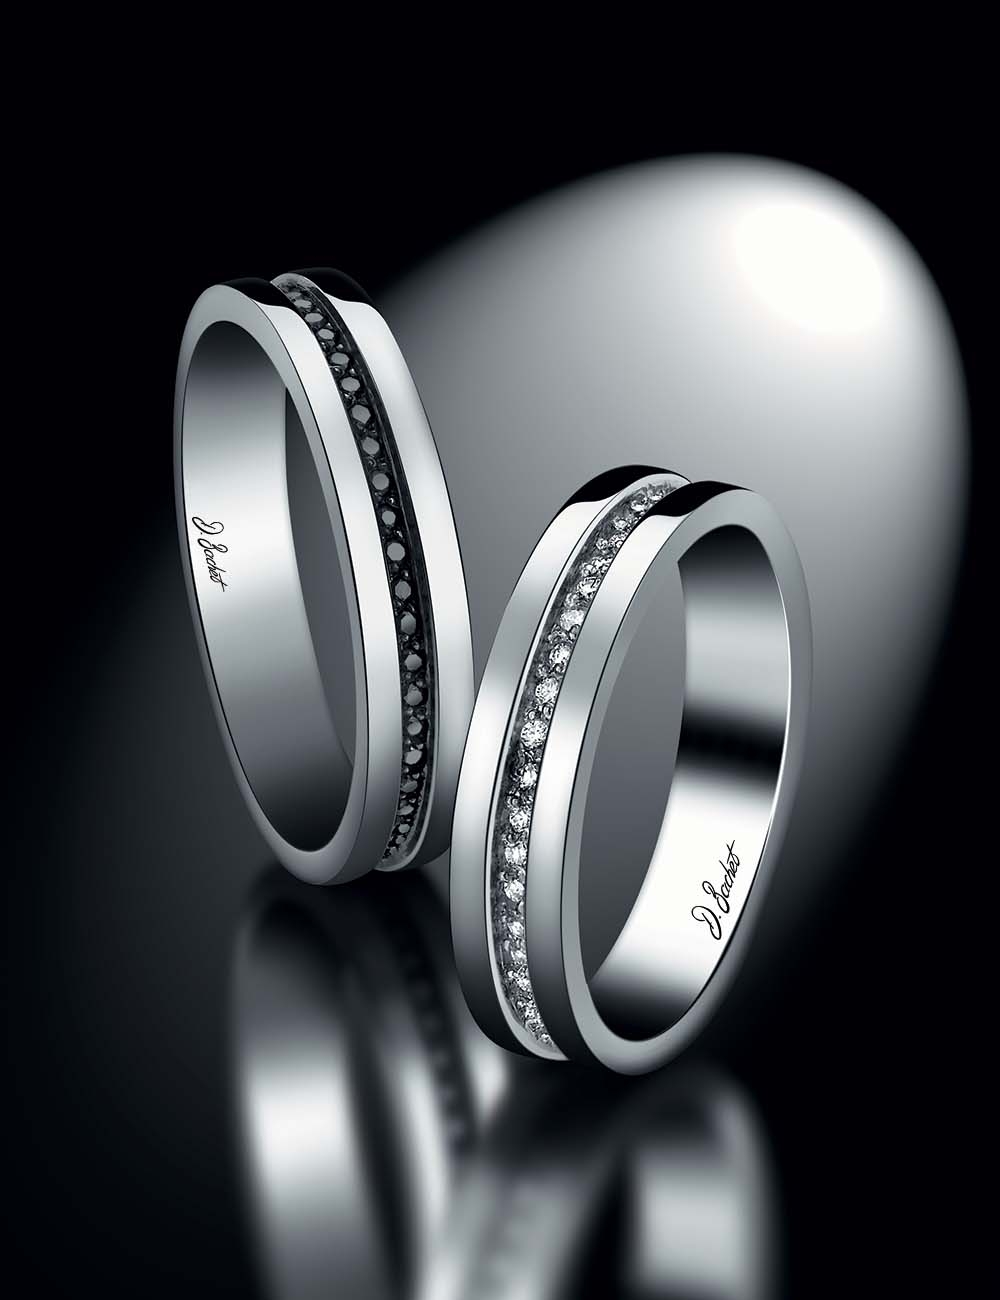 Alliance moderne femme 4.5 mm en platine, or, diamants blancs incrustés, disponible aussi en noir, style sobre et raffiné.